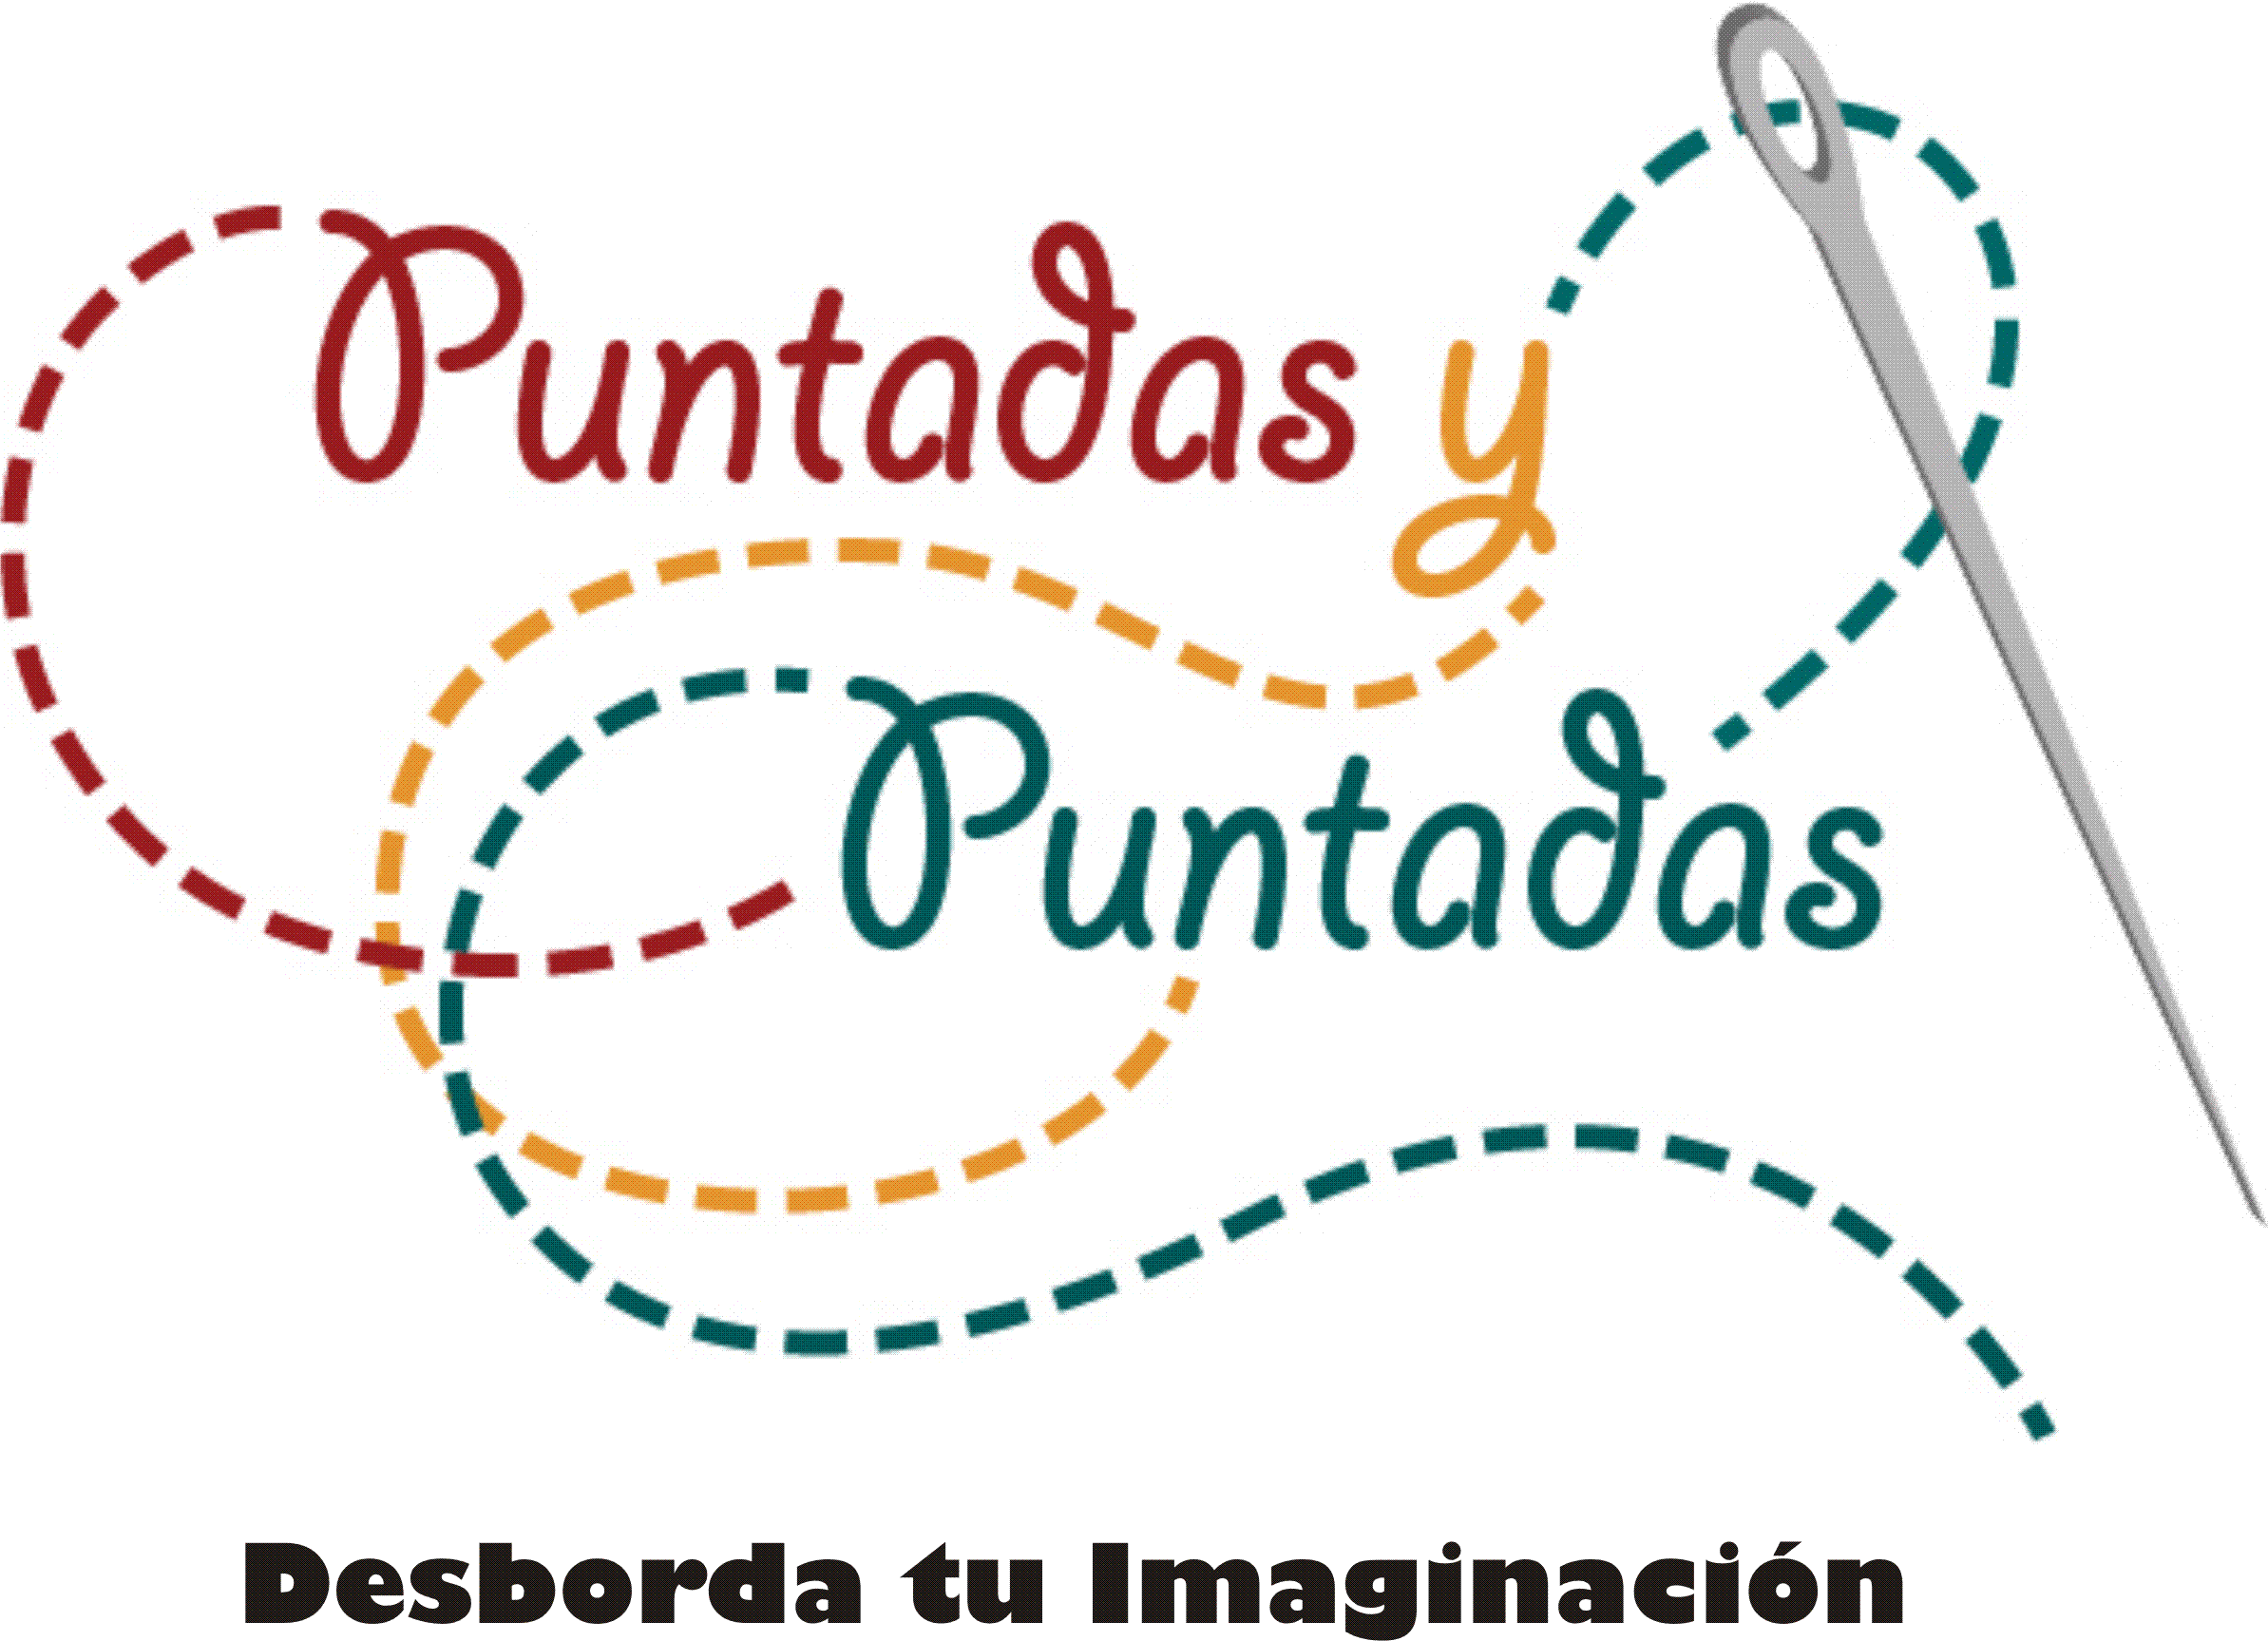 Playeras Cancún by Puntadas y Puntadas. Teléfonos. 998 848-0625 y 998 880-5759